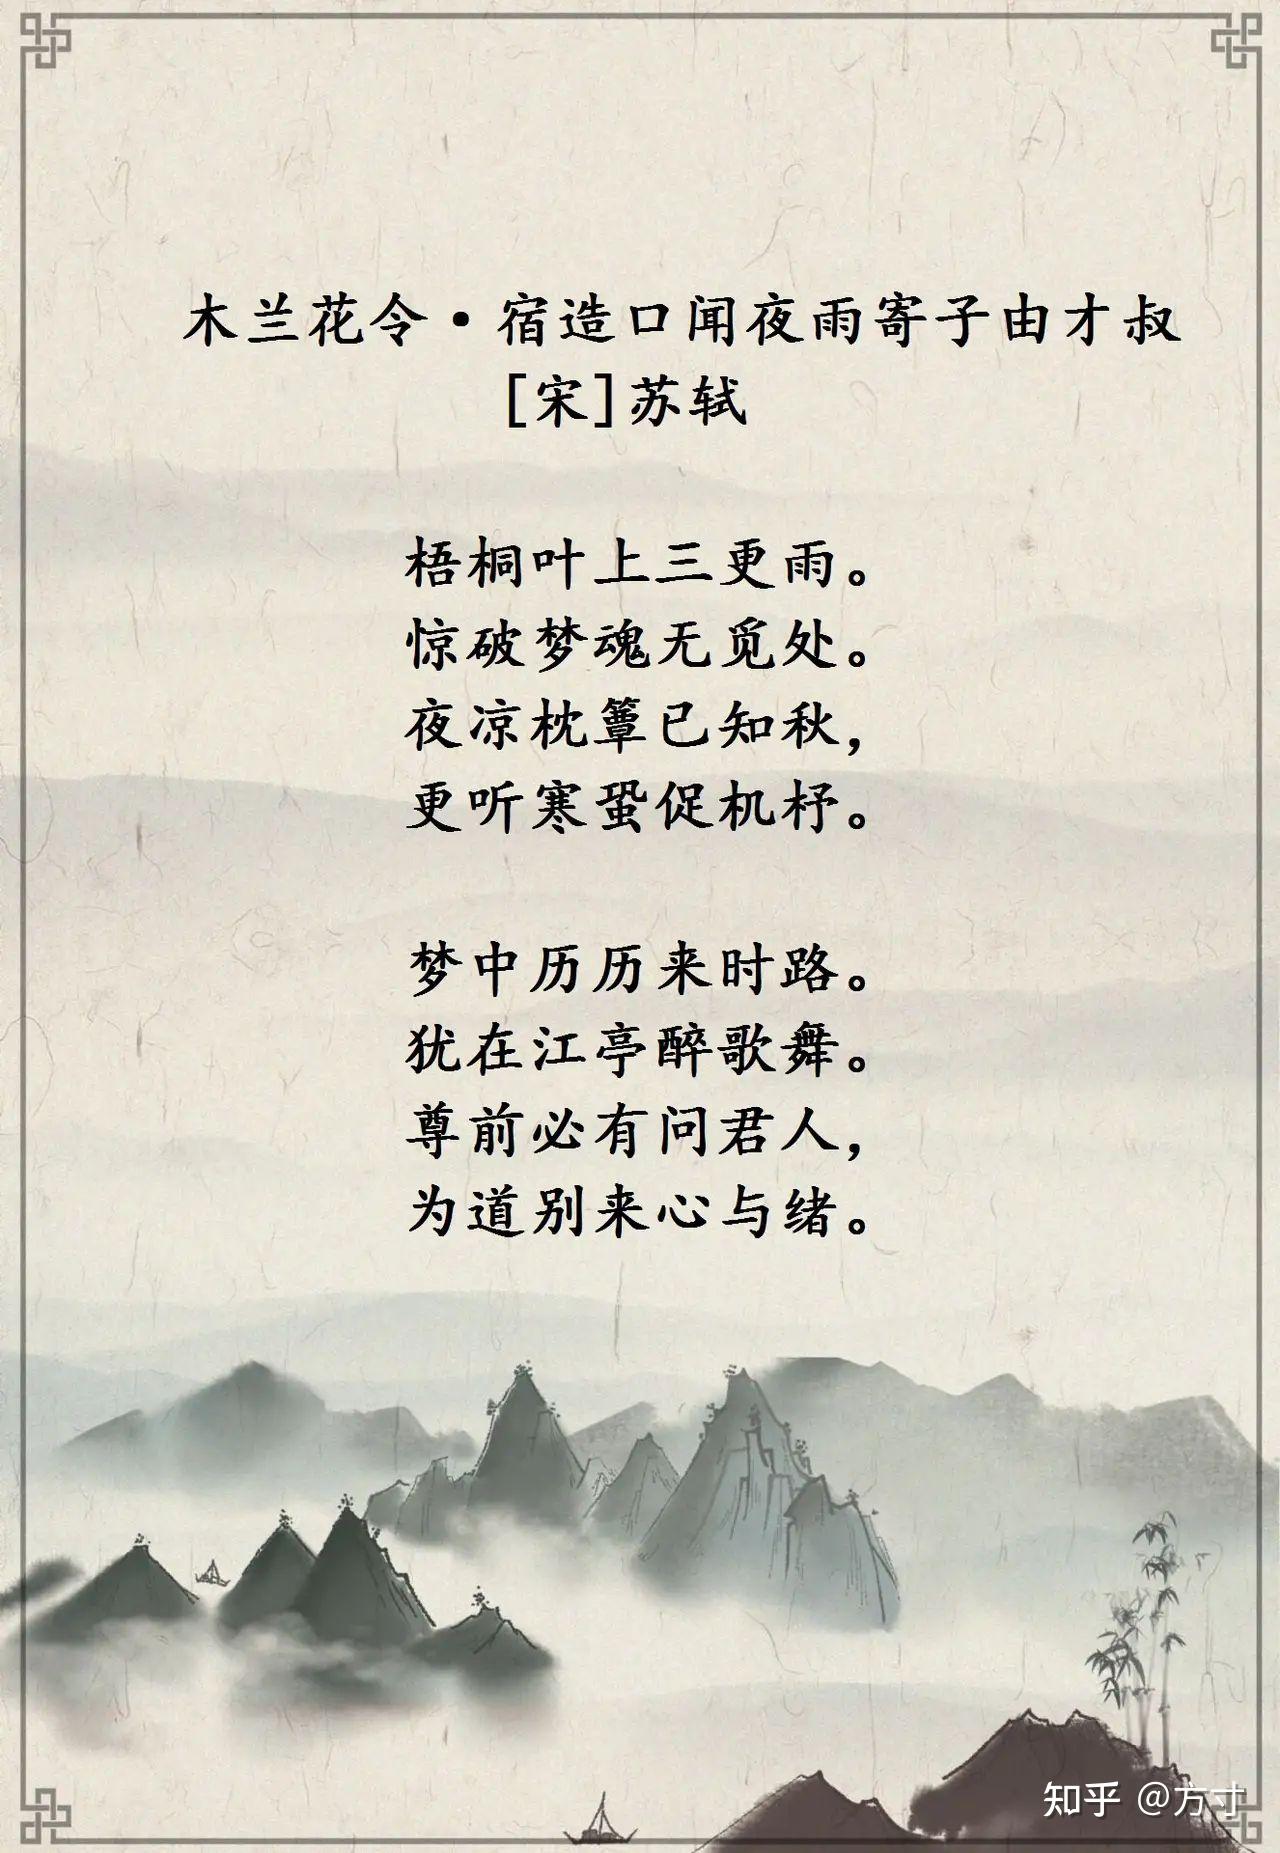 苏东坡写给弟弟苏辙的诗词9首 苏轼对弟弟关爱备至;苏辙对兄长崇拜有